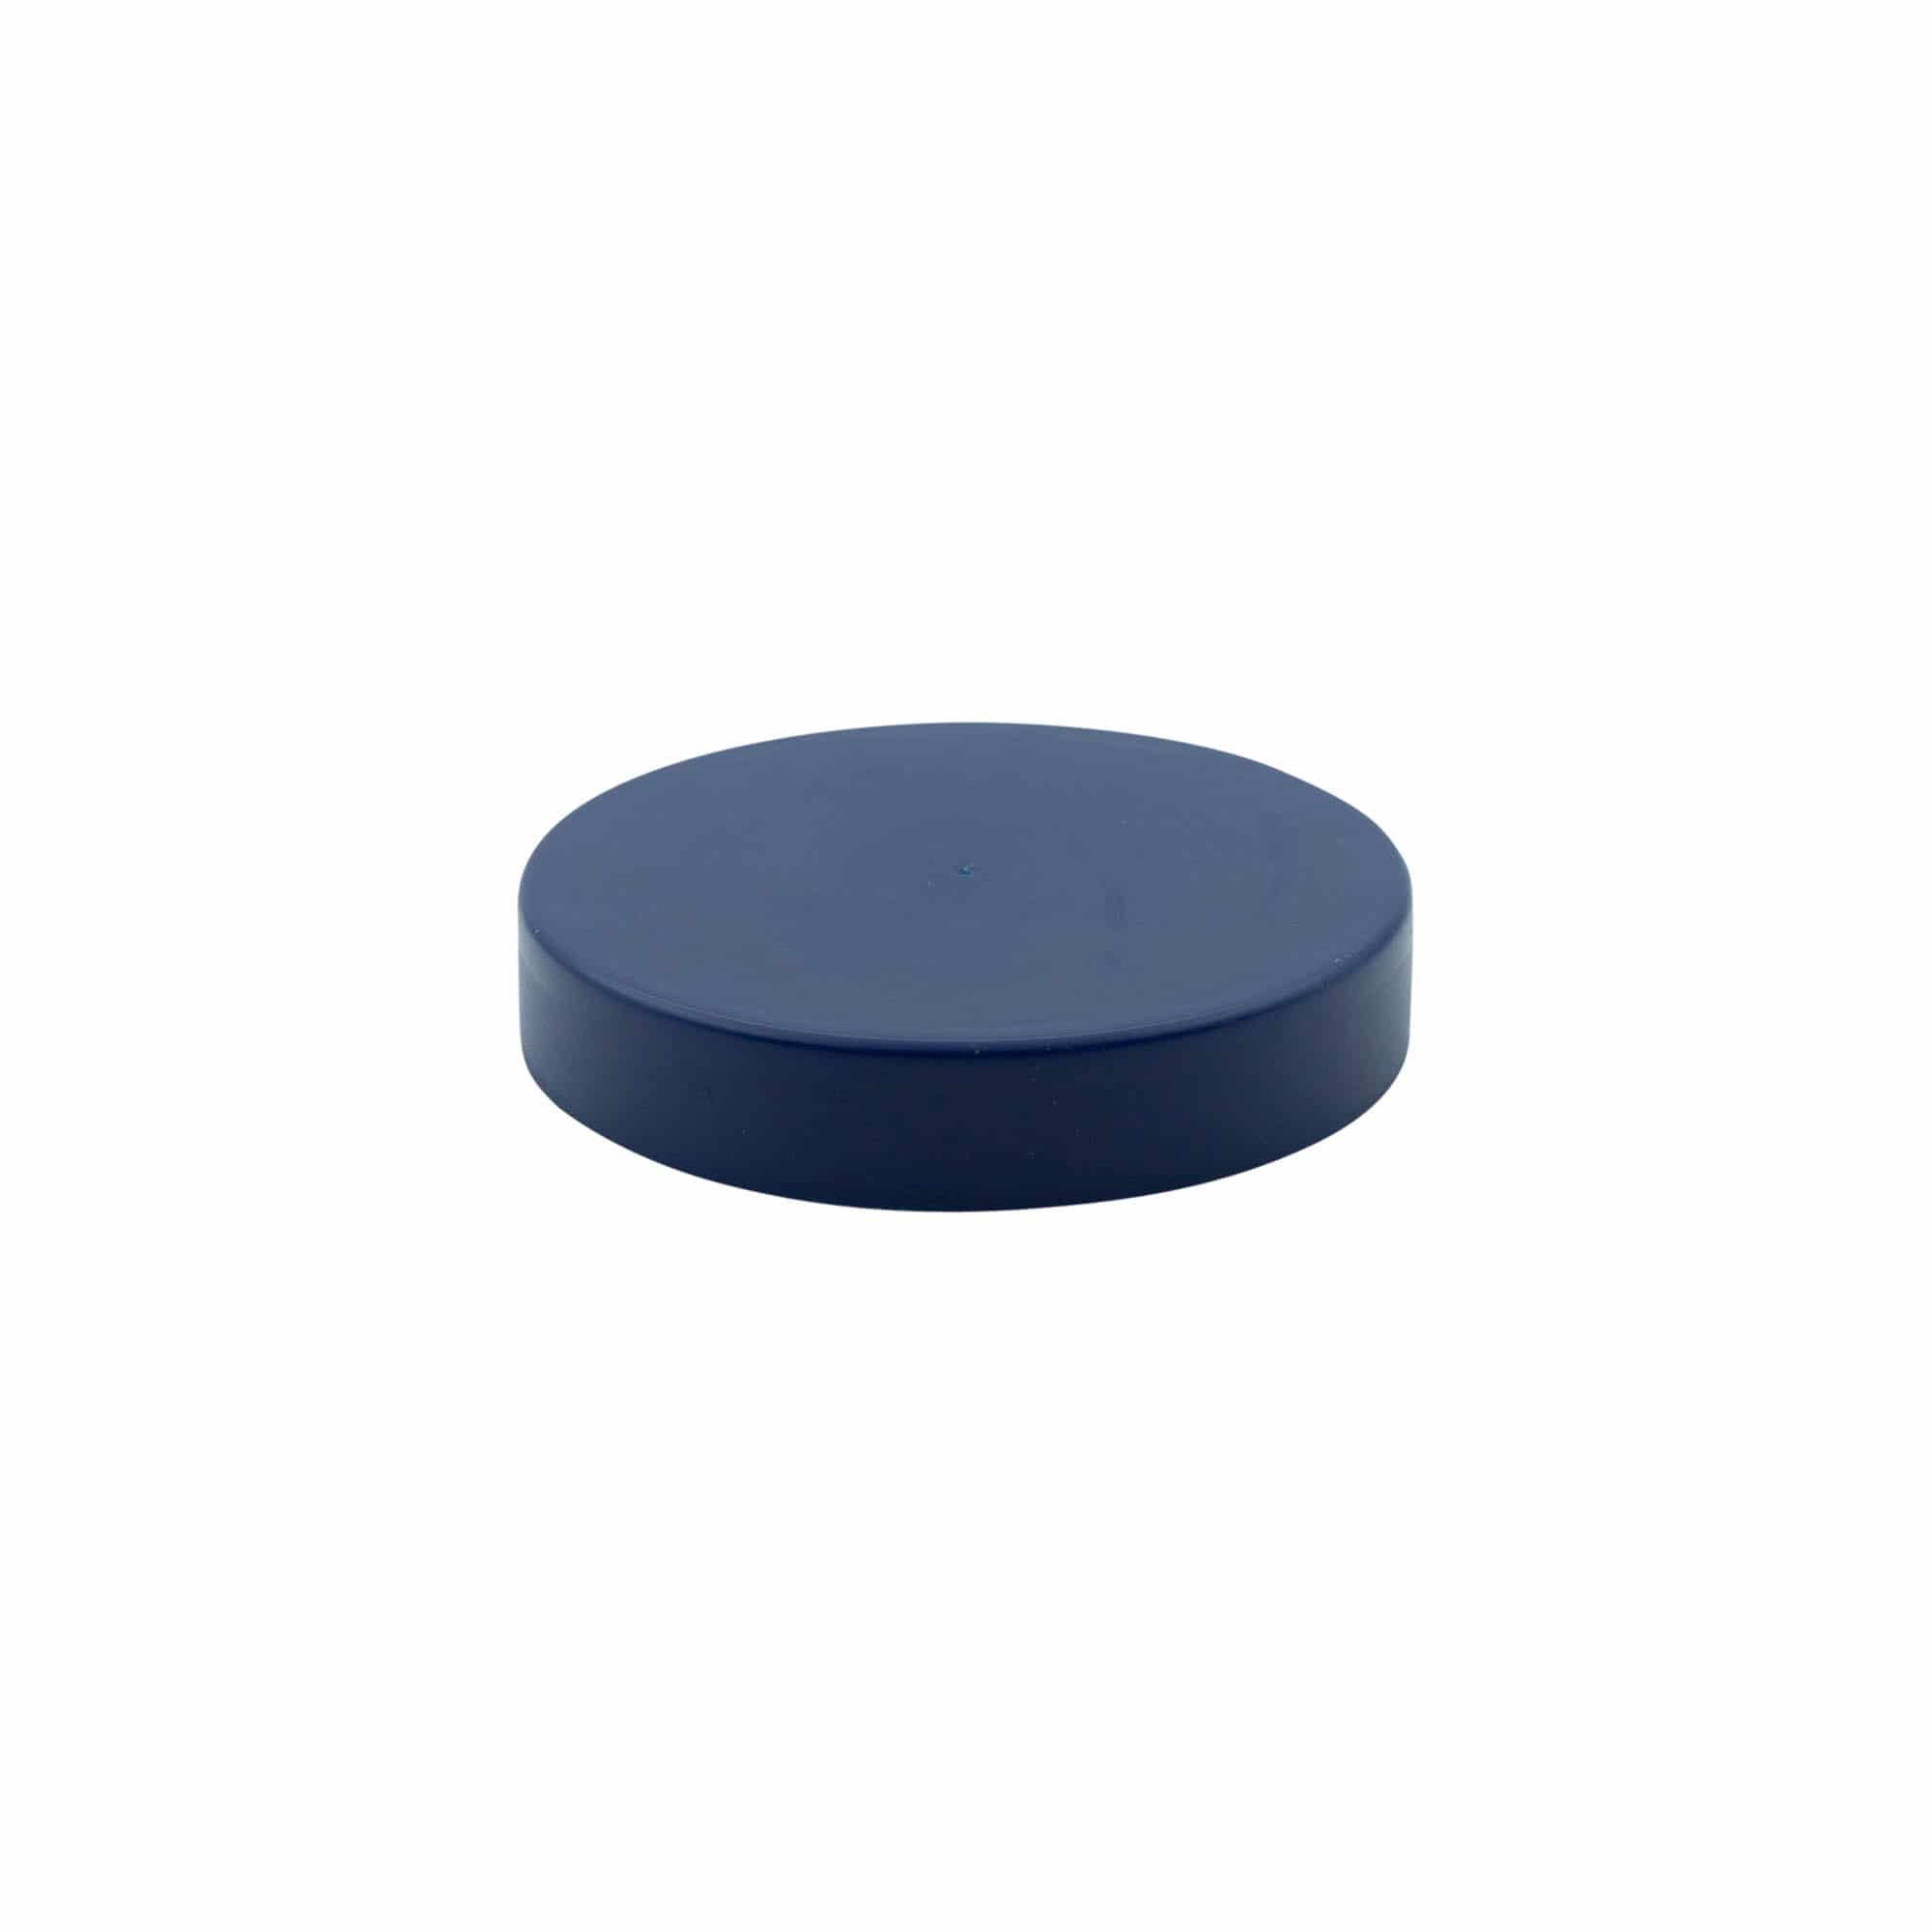 Coperchio a calotta per vasetto in ceramica, plastica HDPE, blu